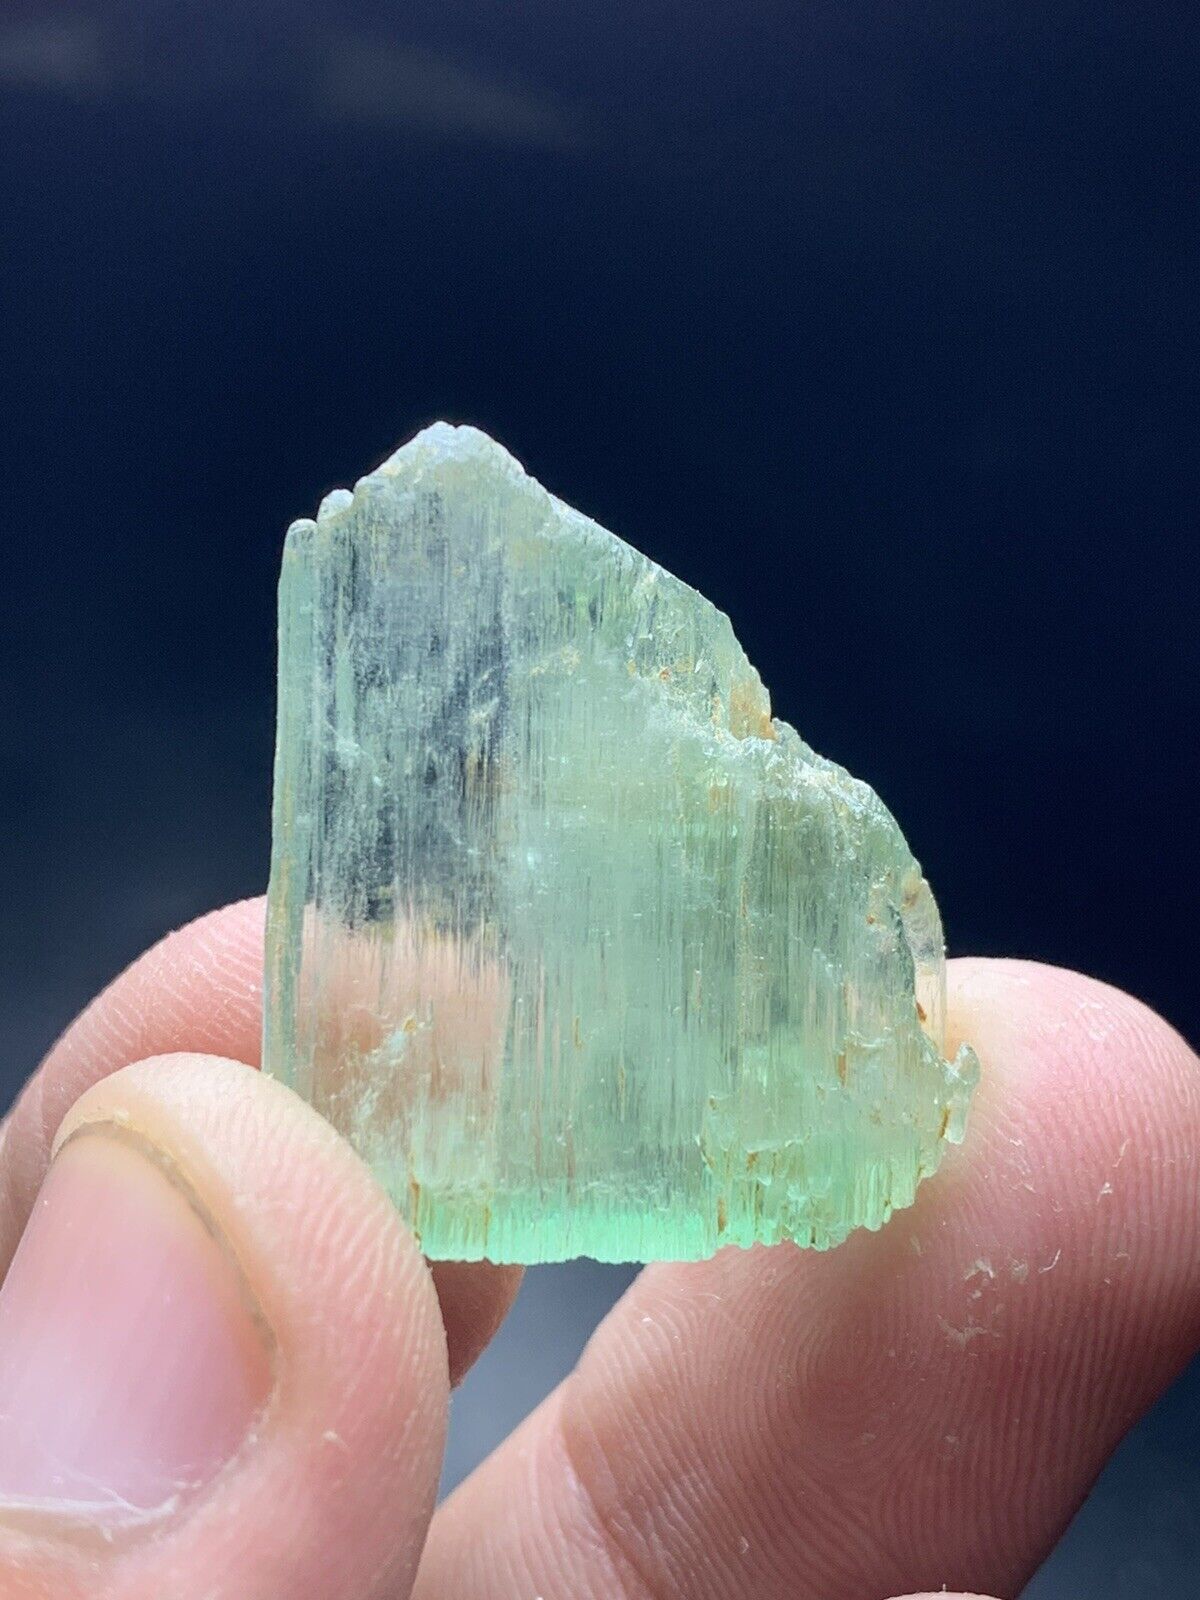 39 Carat Hiddenite Kunzite Crystal From Afghanistan